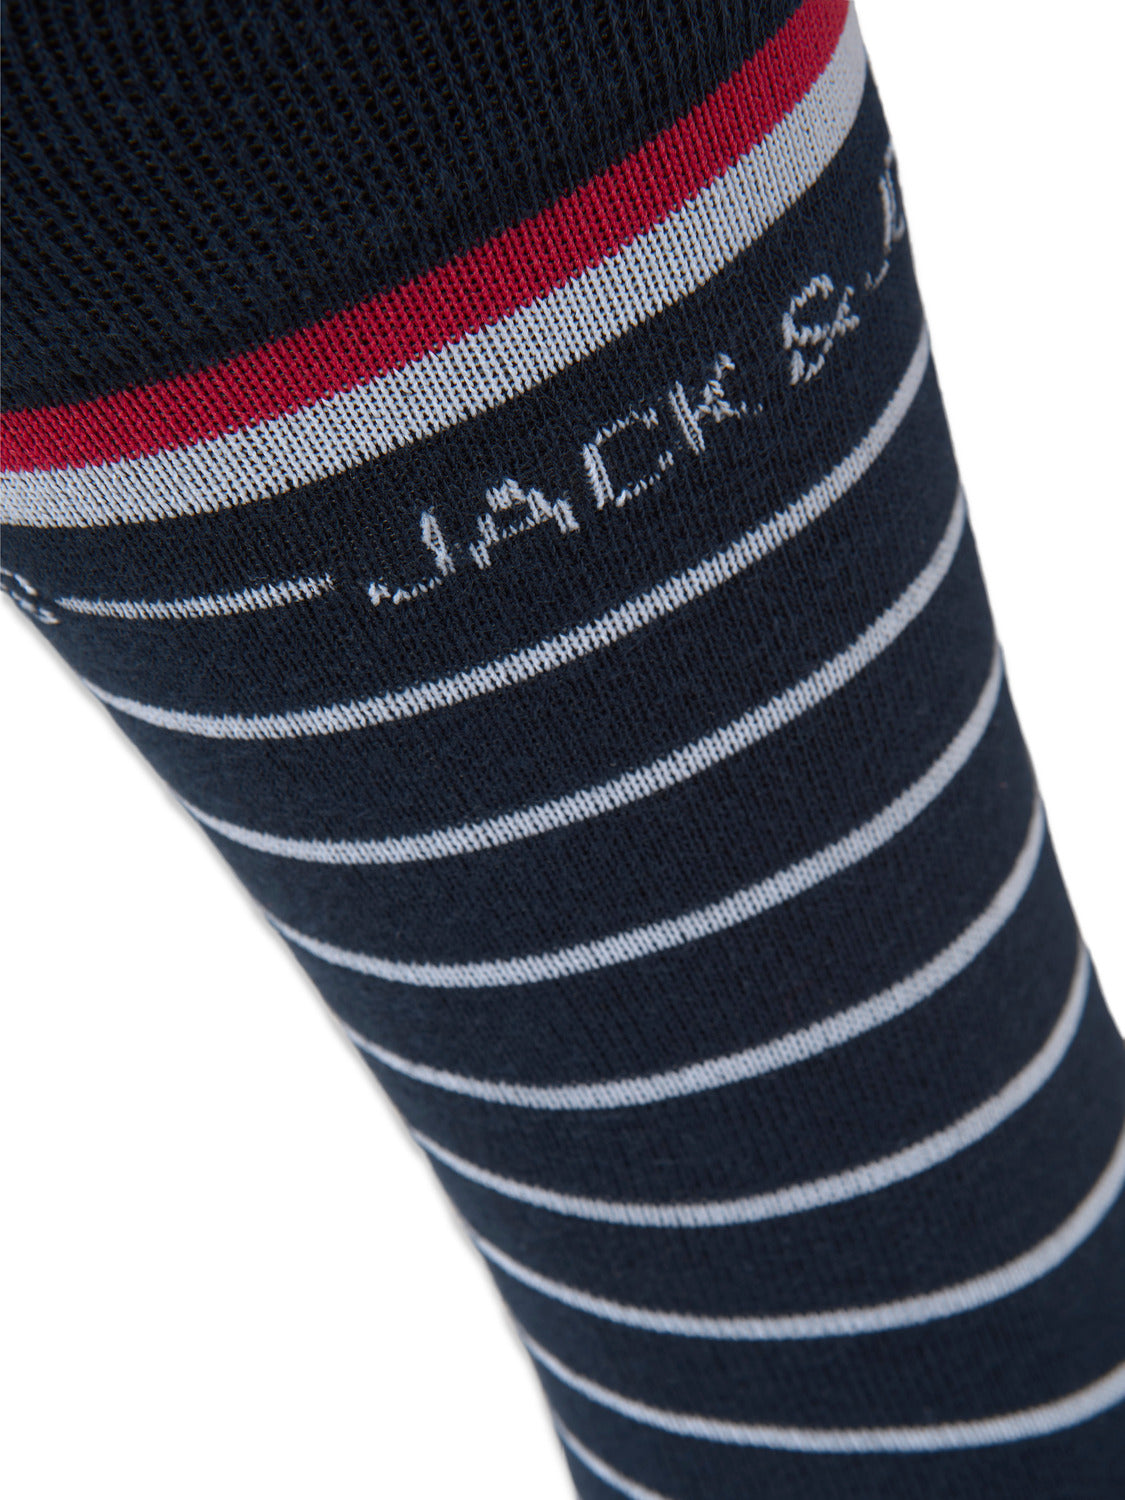 JACARBO Socks - Navy Blazer